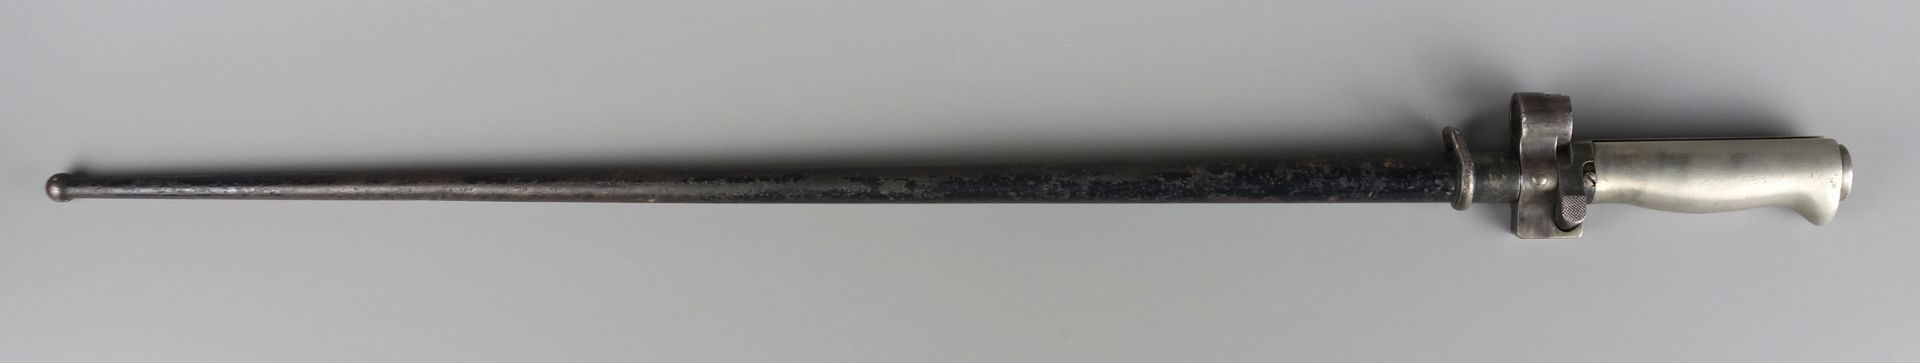 Bajonett M1886 Lebel, Frankreich, Vierkantklinge, Gesamt-L.63,4cm, L. der Schei